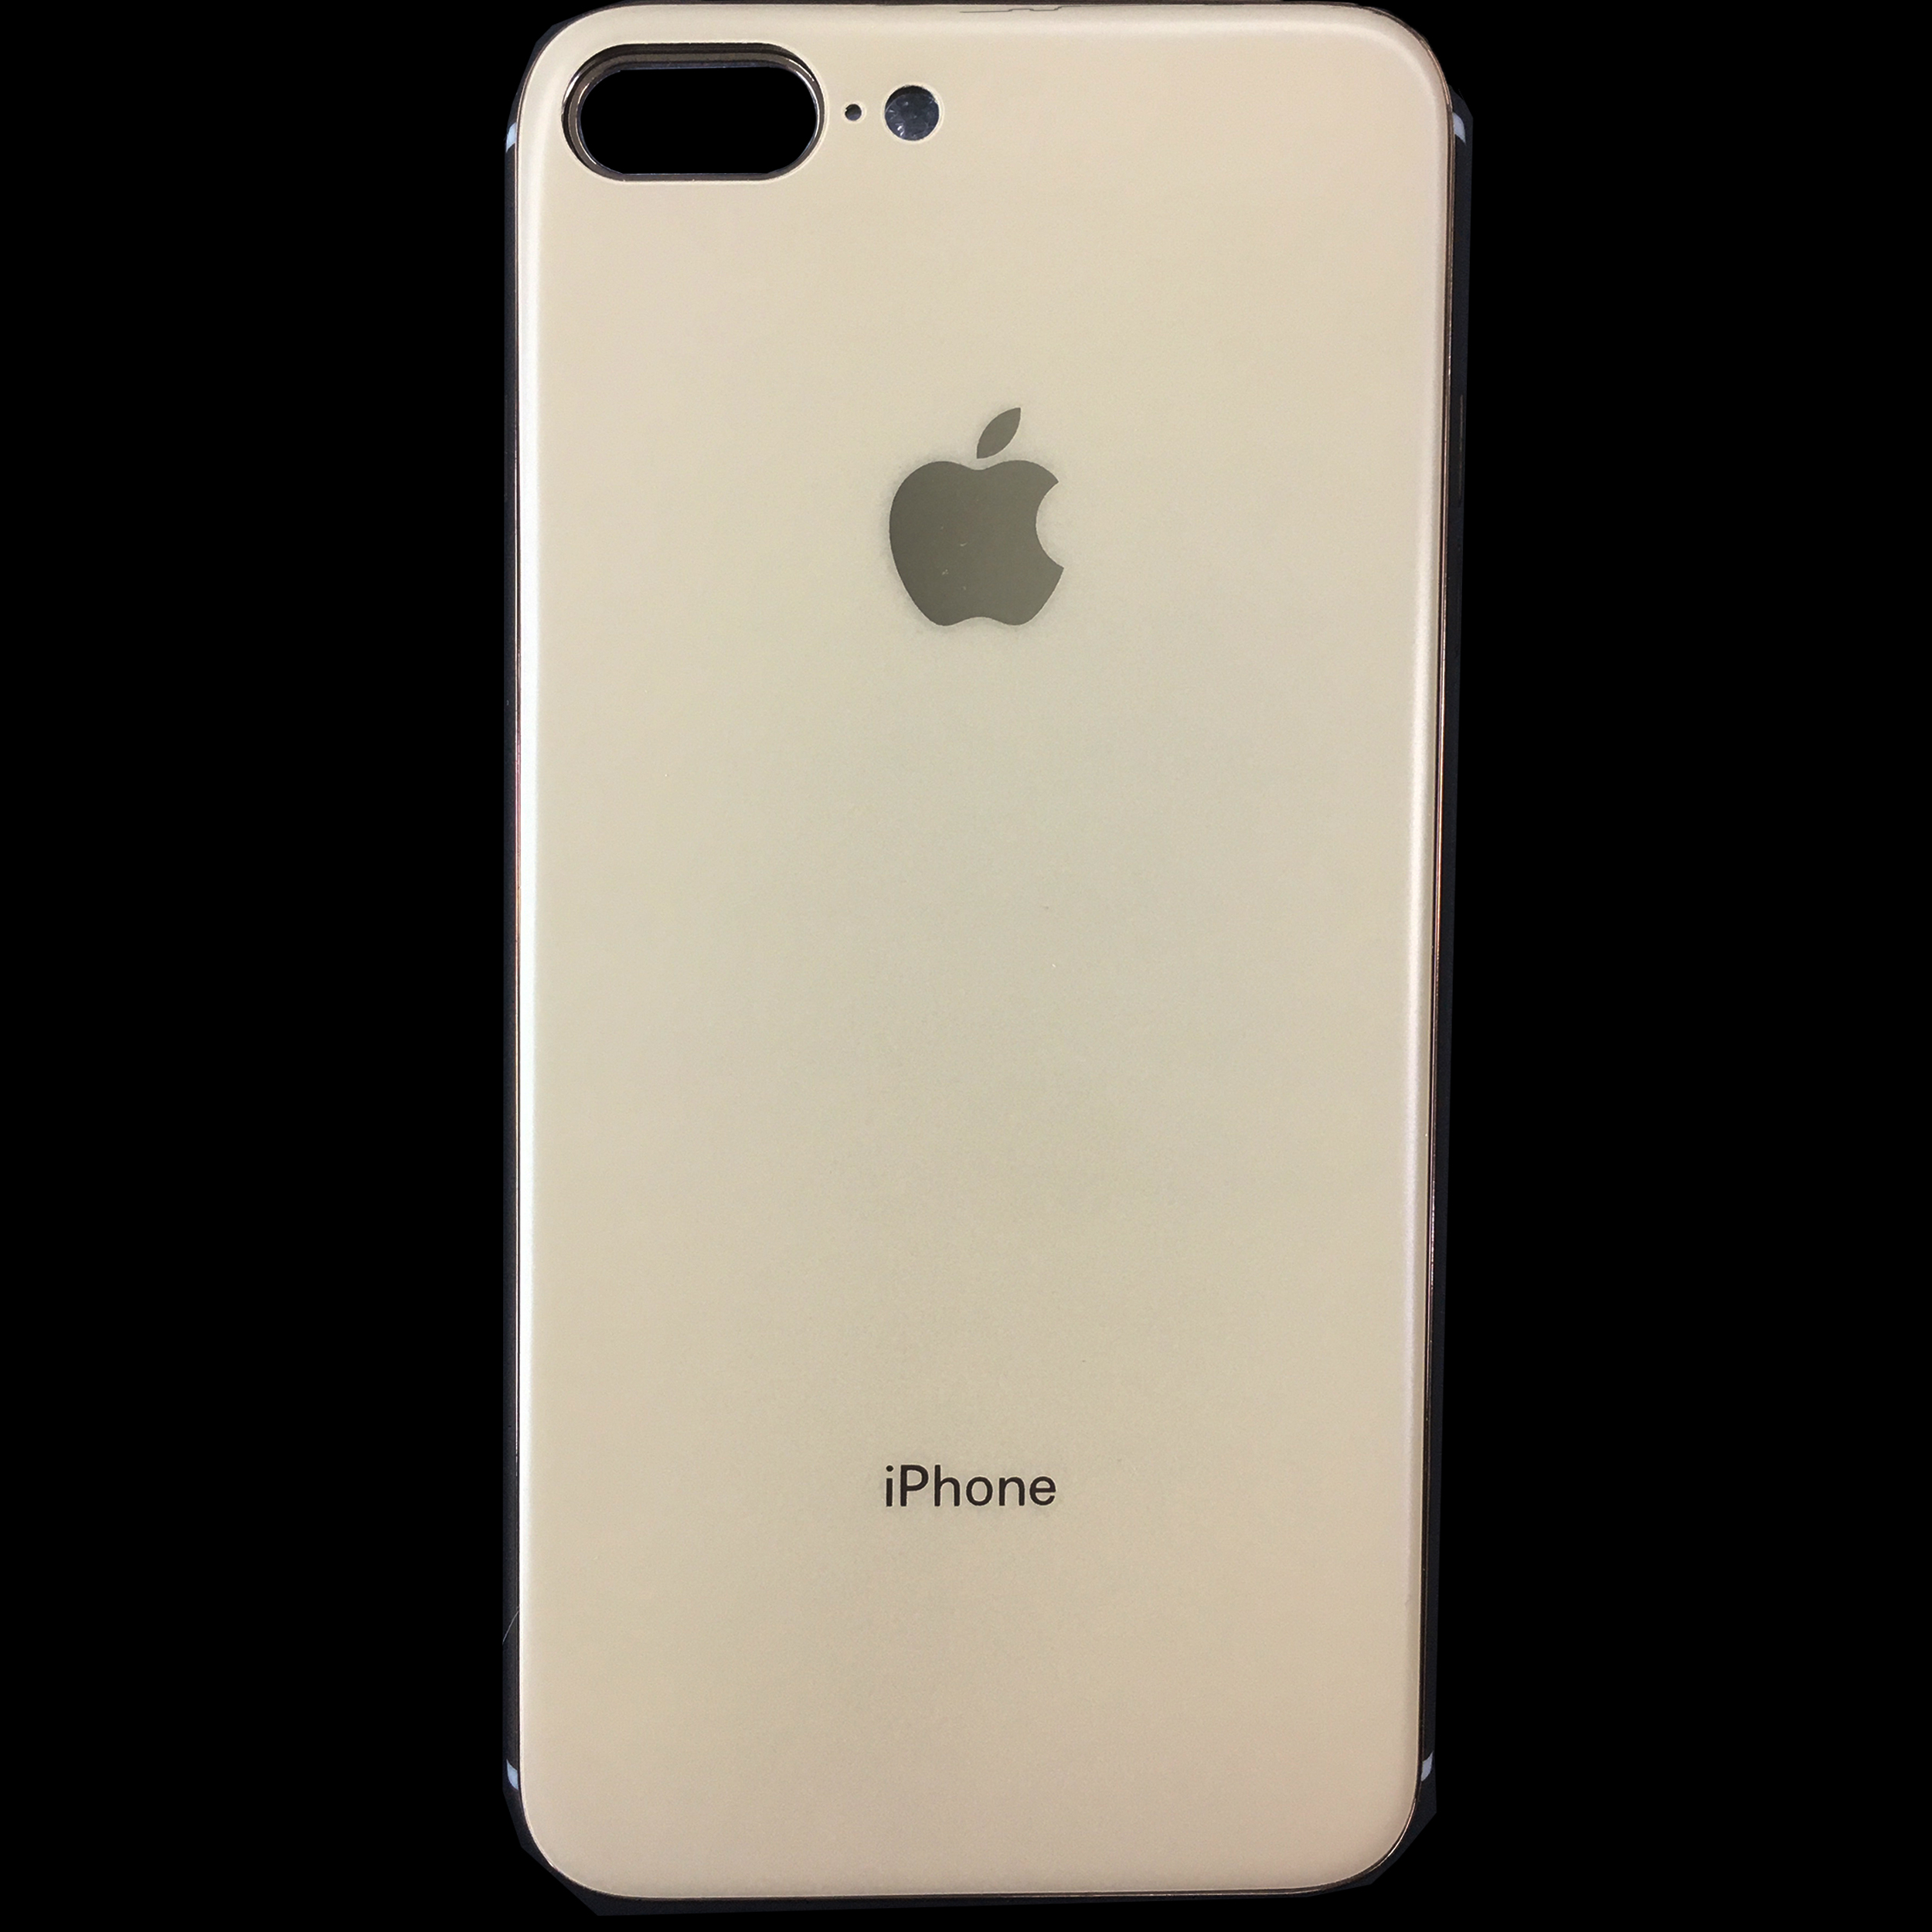 کاور مای کیس کد 8plus مناسب برای گوشی موبایل اپل iPhone 7plus / 8plus